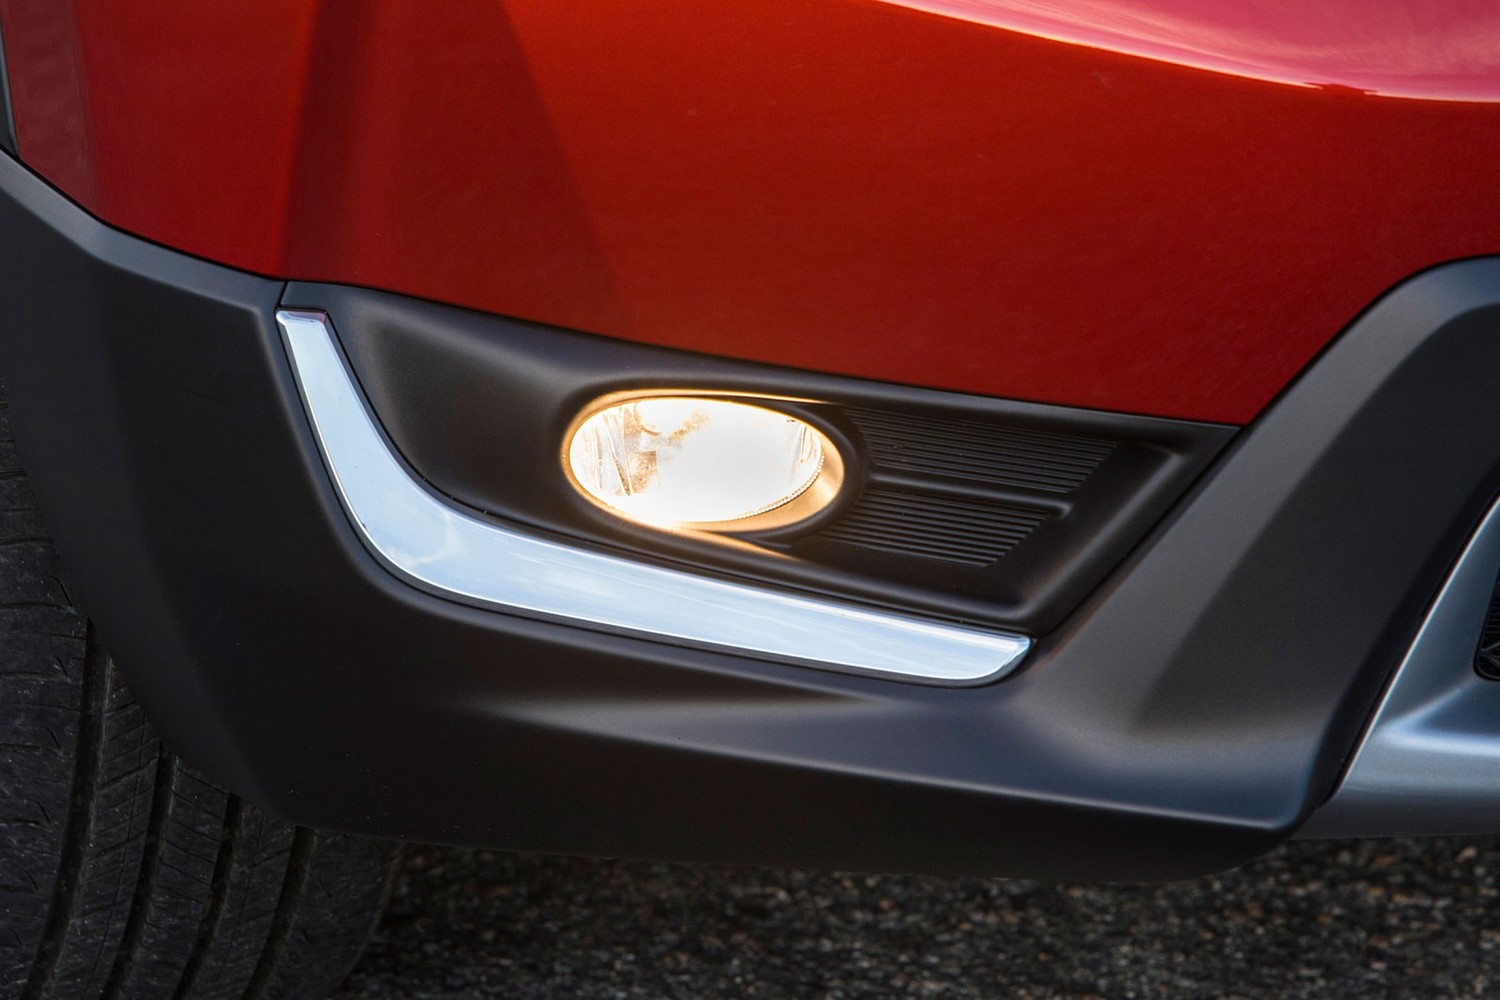 Honda CR-V Touring 4dr SUV Fog Light (2017 model year shown)